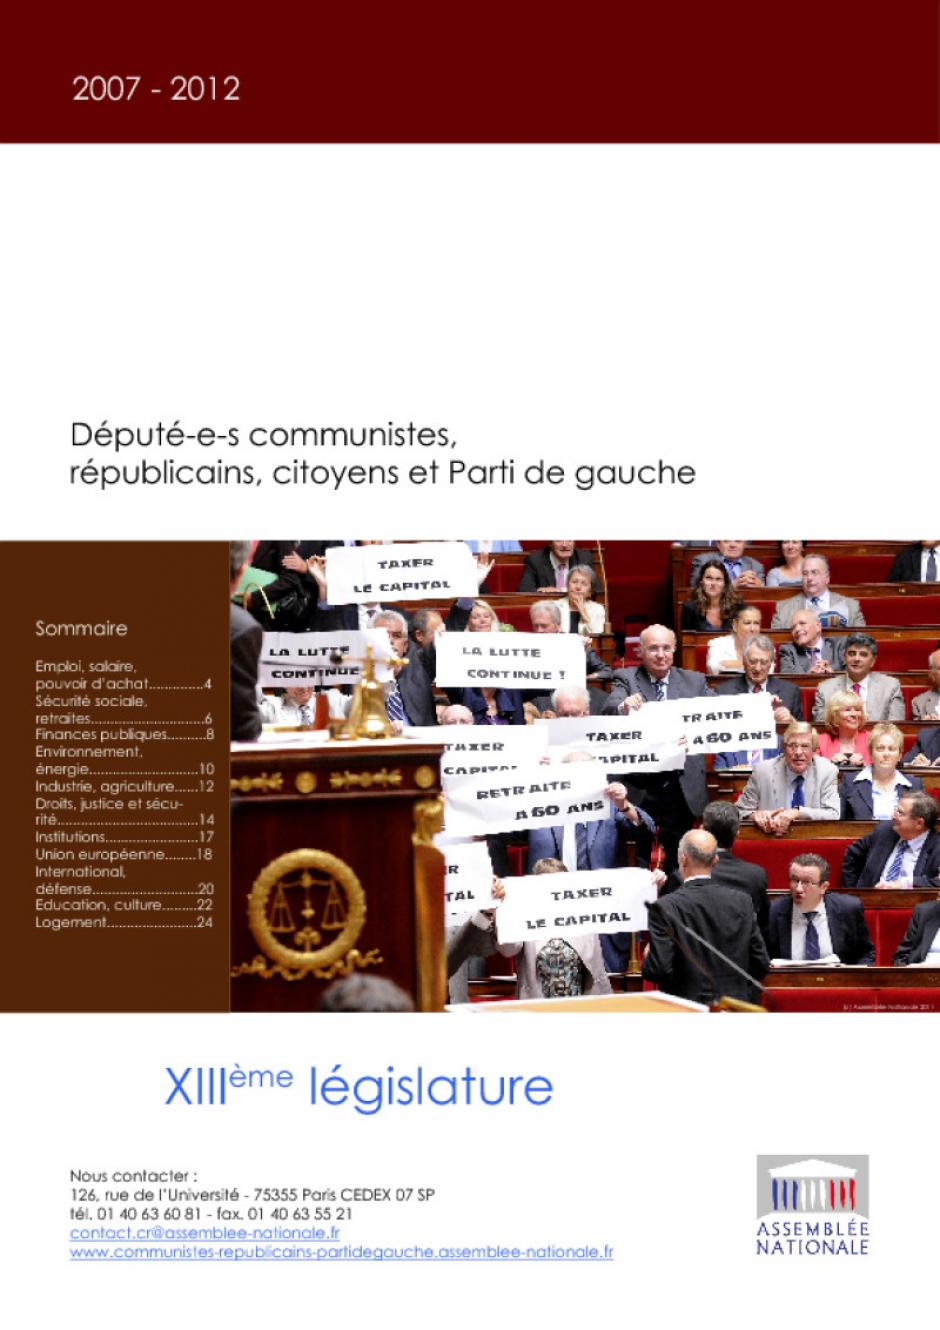 Députés communistes, républicains, citoyens et Parti de gauche- Bilan de XIIIe législature 2007-2012